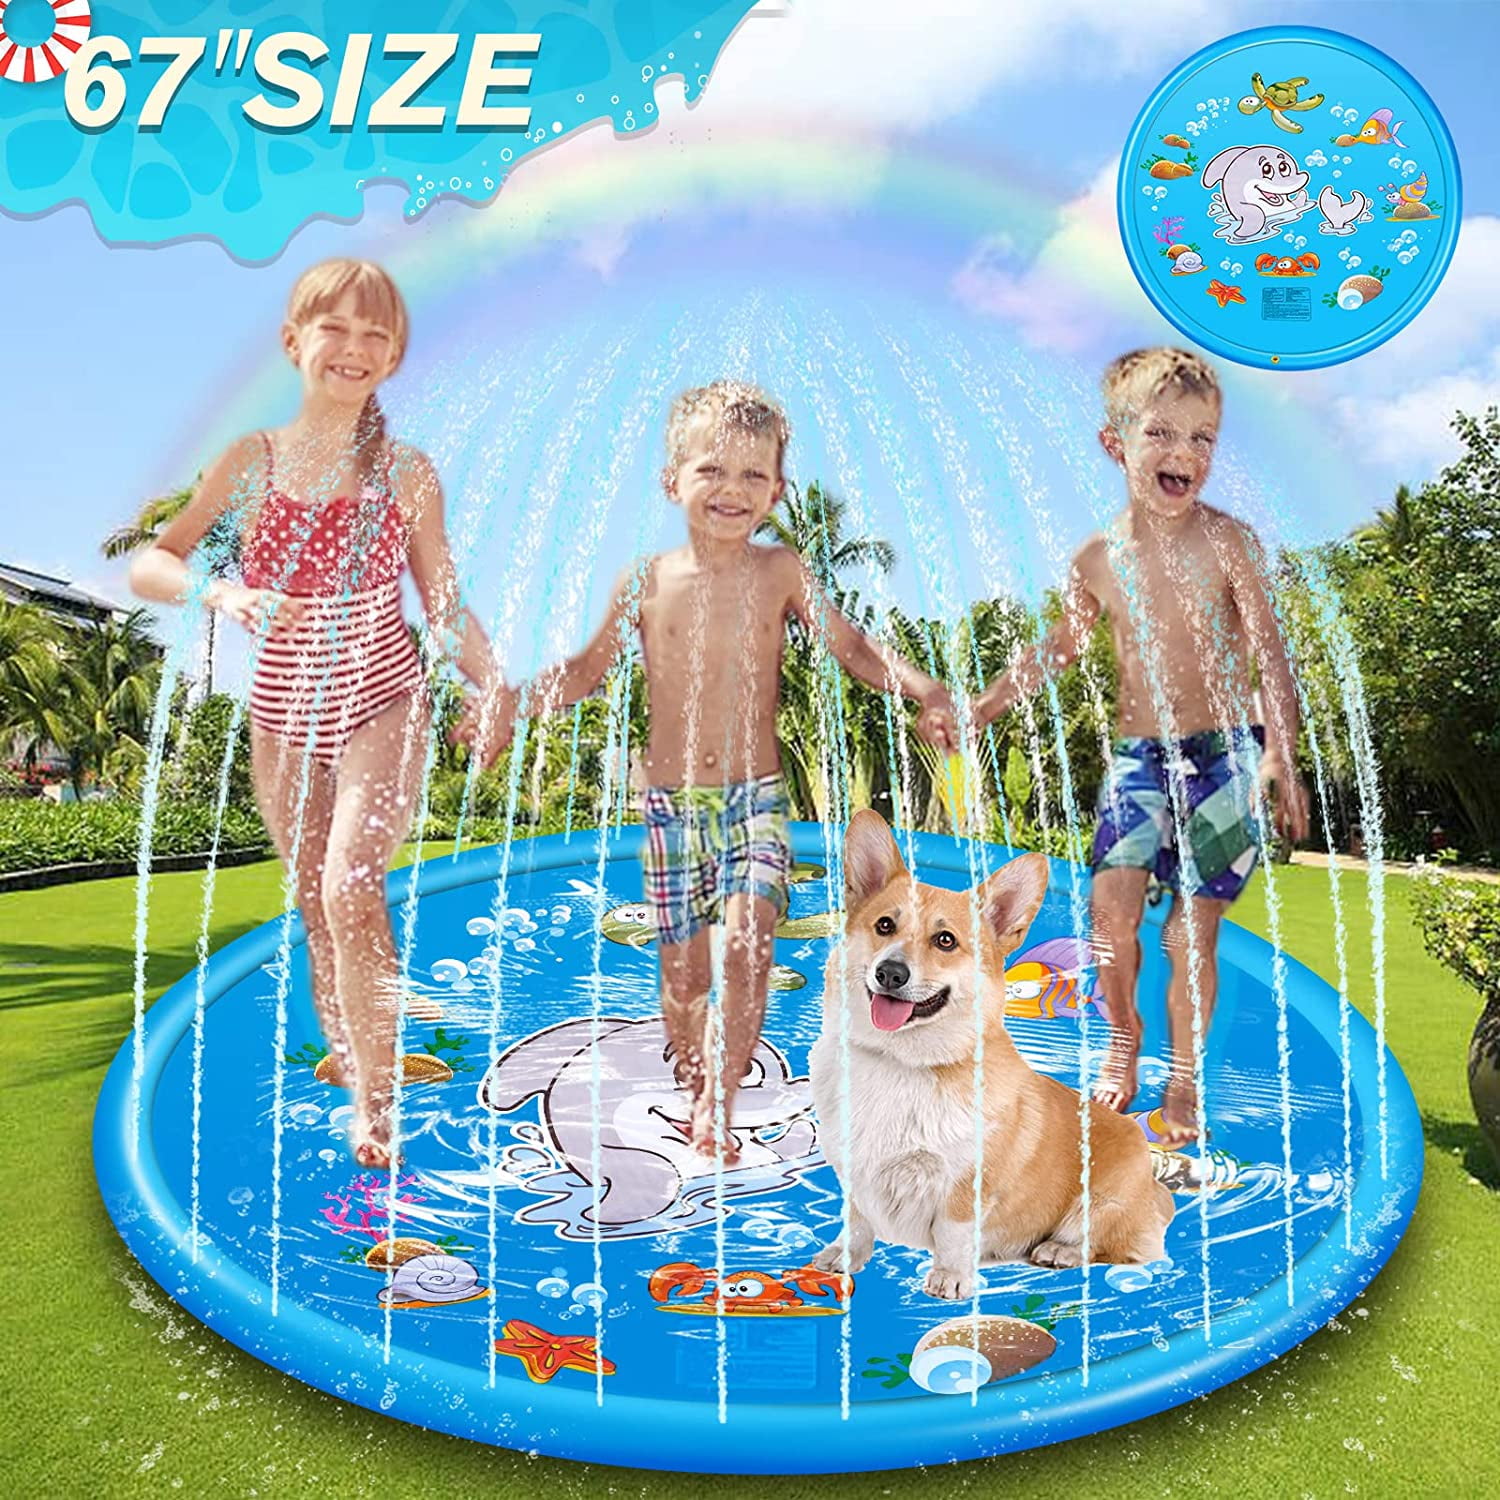 Details about   67"Sprinkler Splash Pad Play Mat Center Toddler Pool Water Toy Outdoor Fun Ring 